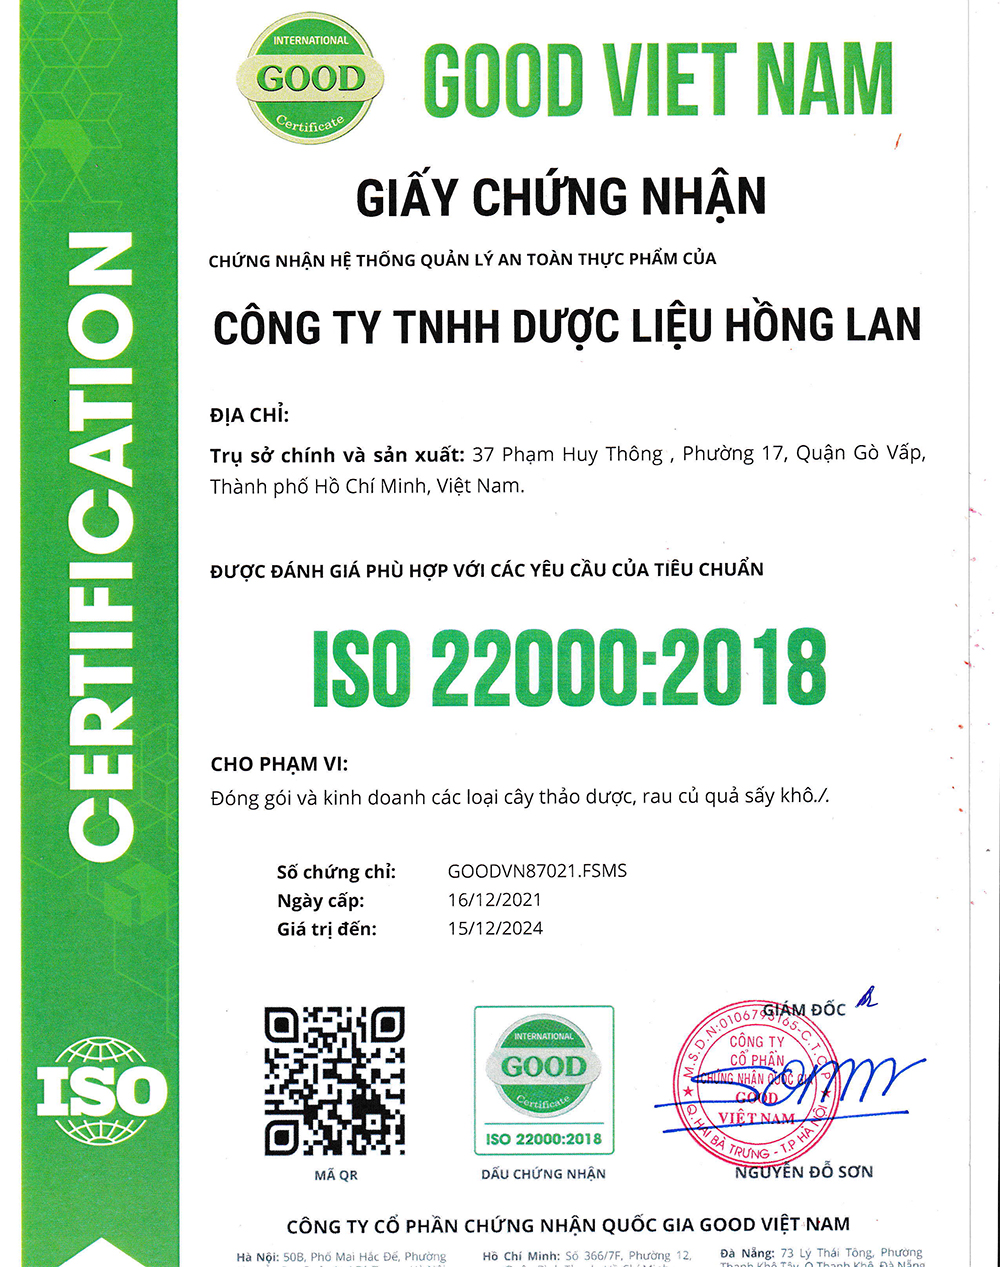 Trà túi lọc Chè Vằng & Lá Sen được sản xuất bởi Công ty TNHH Dược Liệu Hồng Lan theo hệ thống quản lý an toàn thực phẩm ISO 22000:2018 được cấp bởi công ty cổ phần chứng nhận Quốc Gia Good Việt Nam (Good Viet Nam Certification Joint Stock Company)